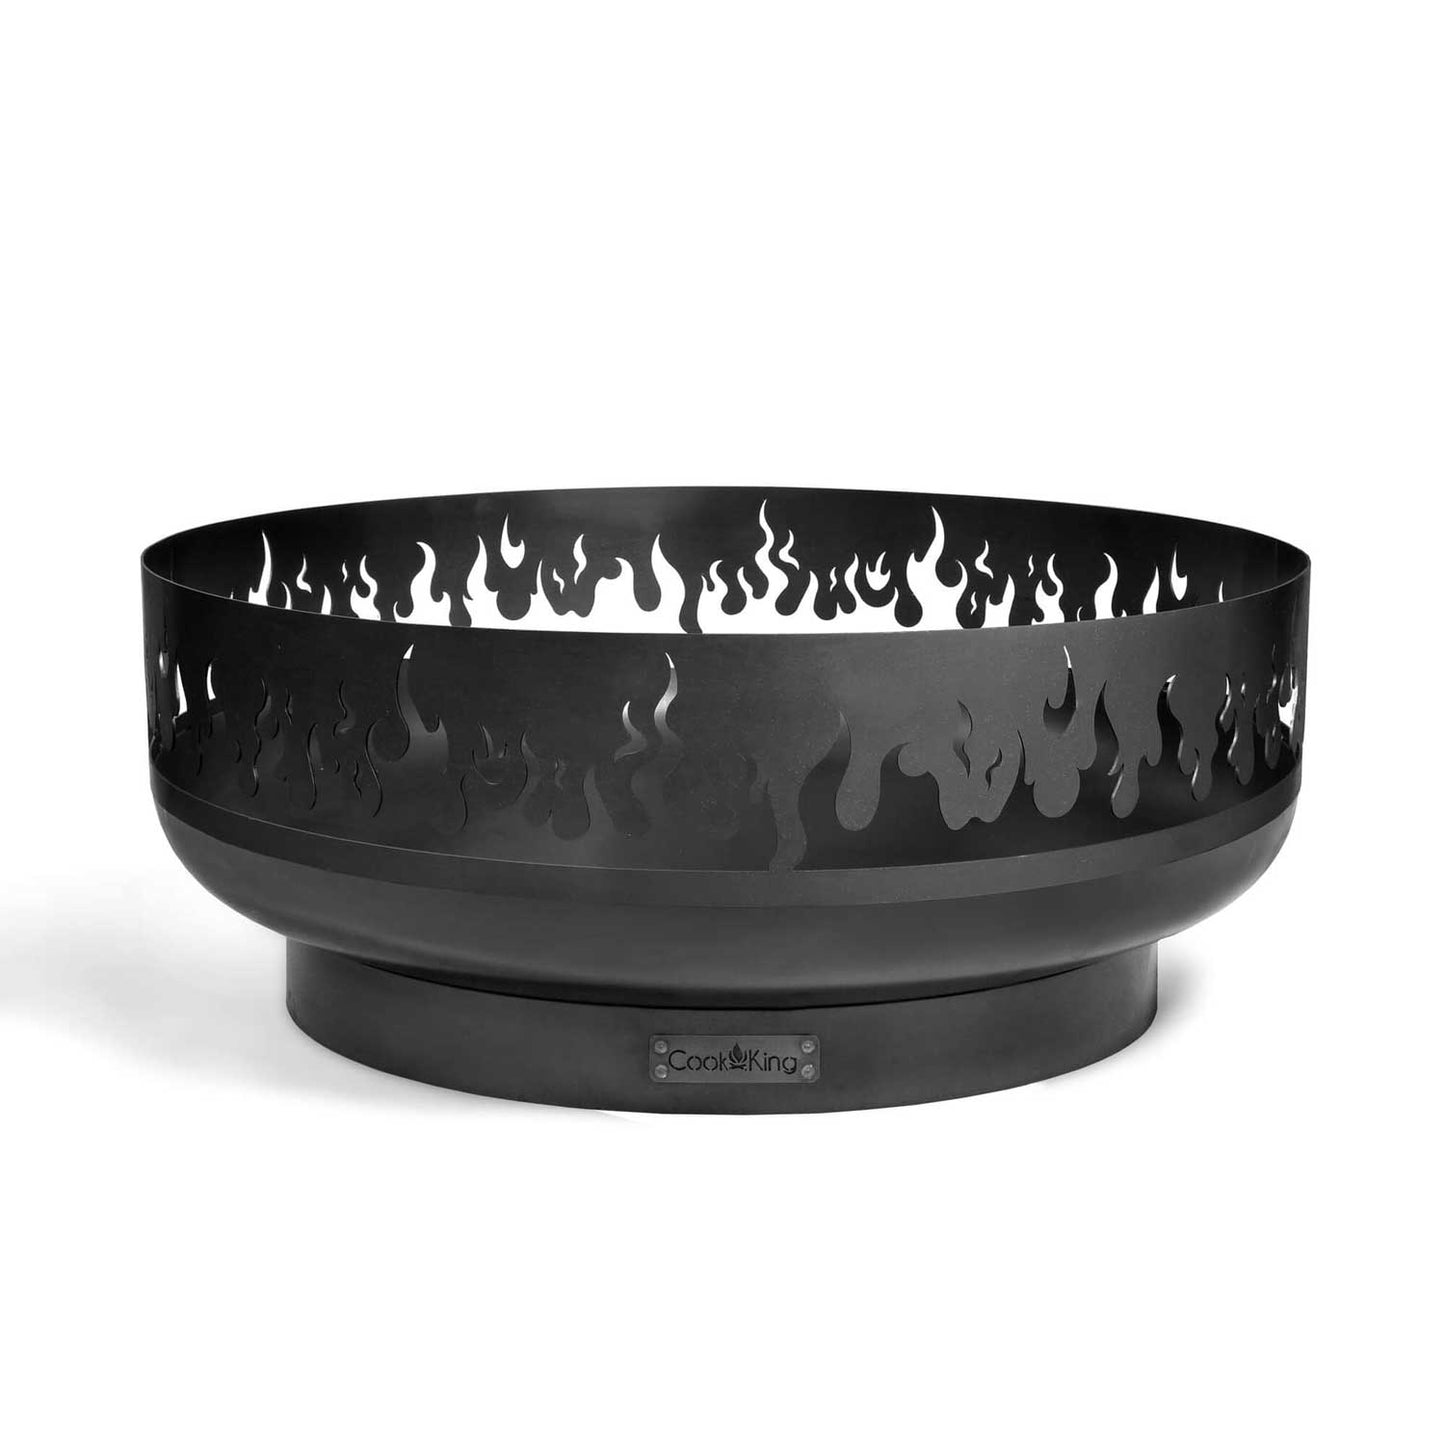 Feuerschale „FIRE“ 80 cm, Cook King, 2